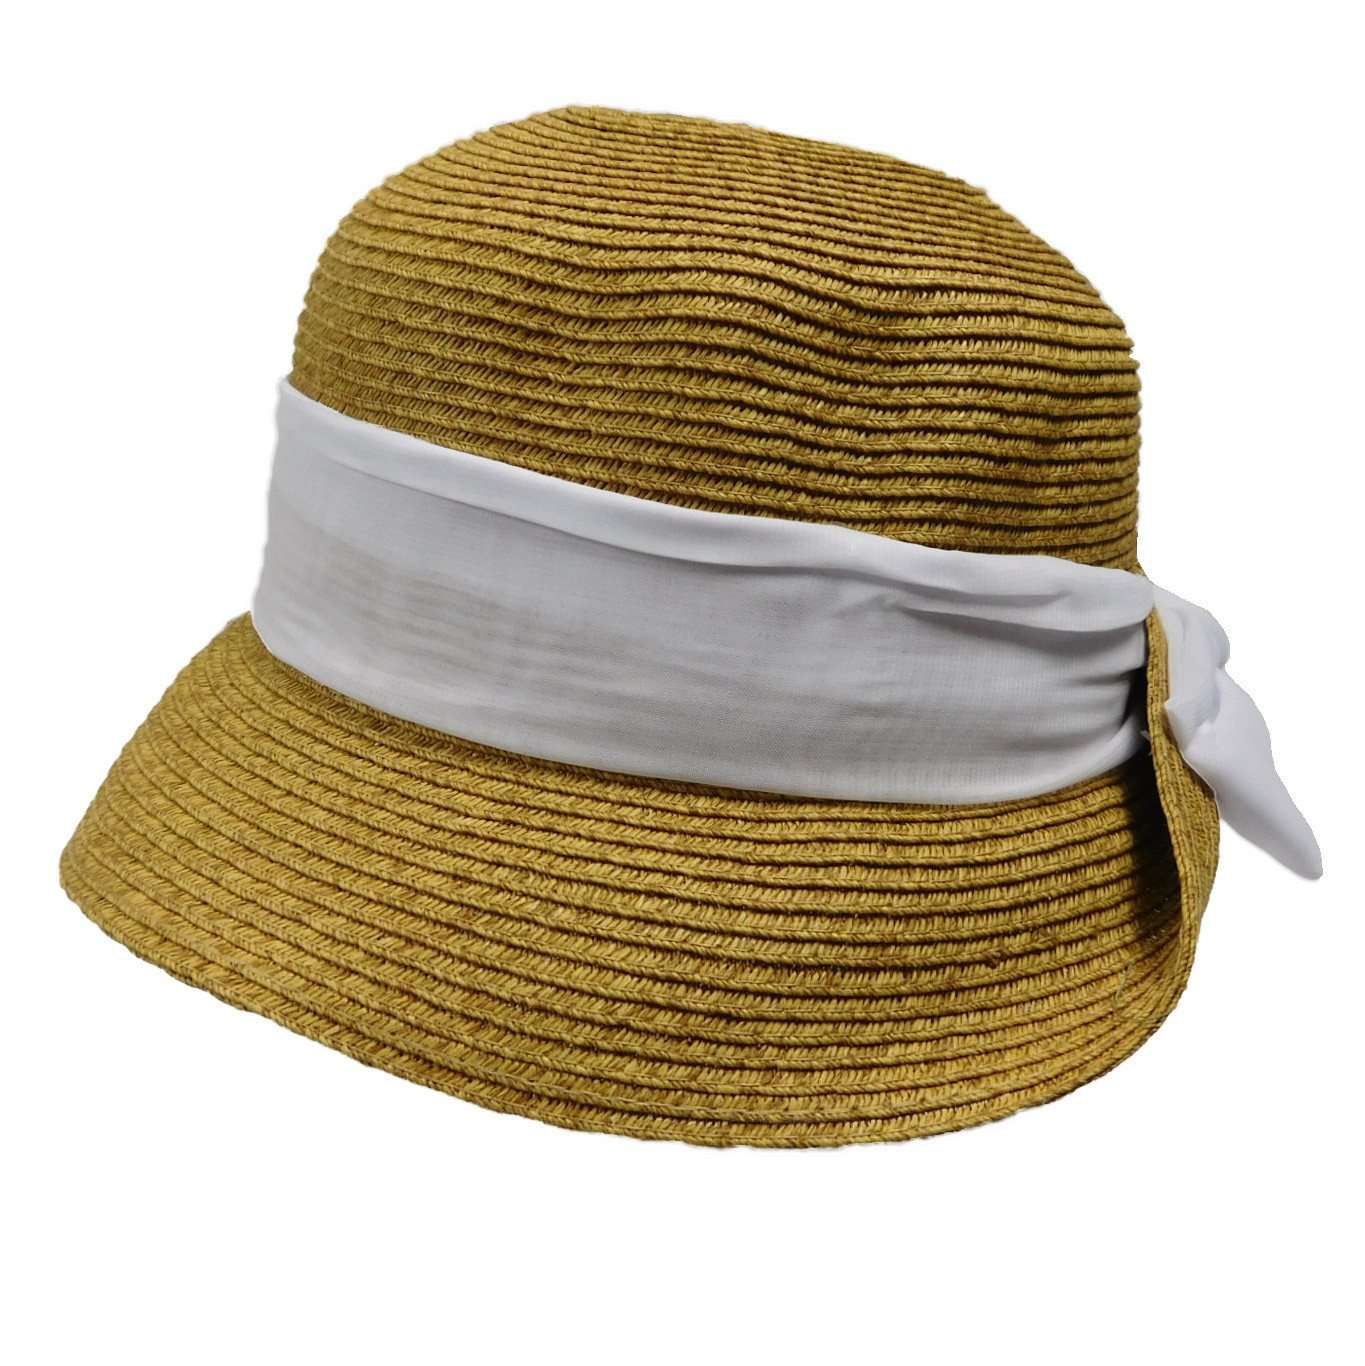 Small Bonnet Hat with Scarf - Boardwalk Style Cloche Boardwalk Style Hats    